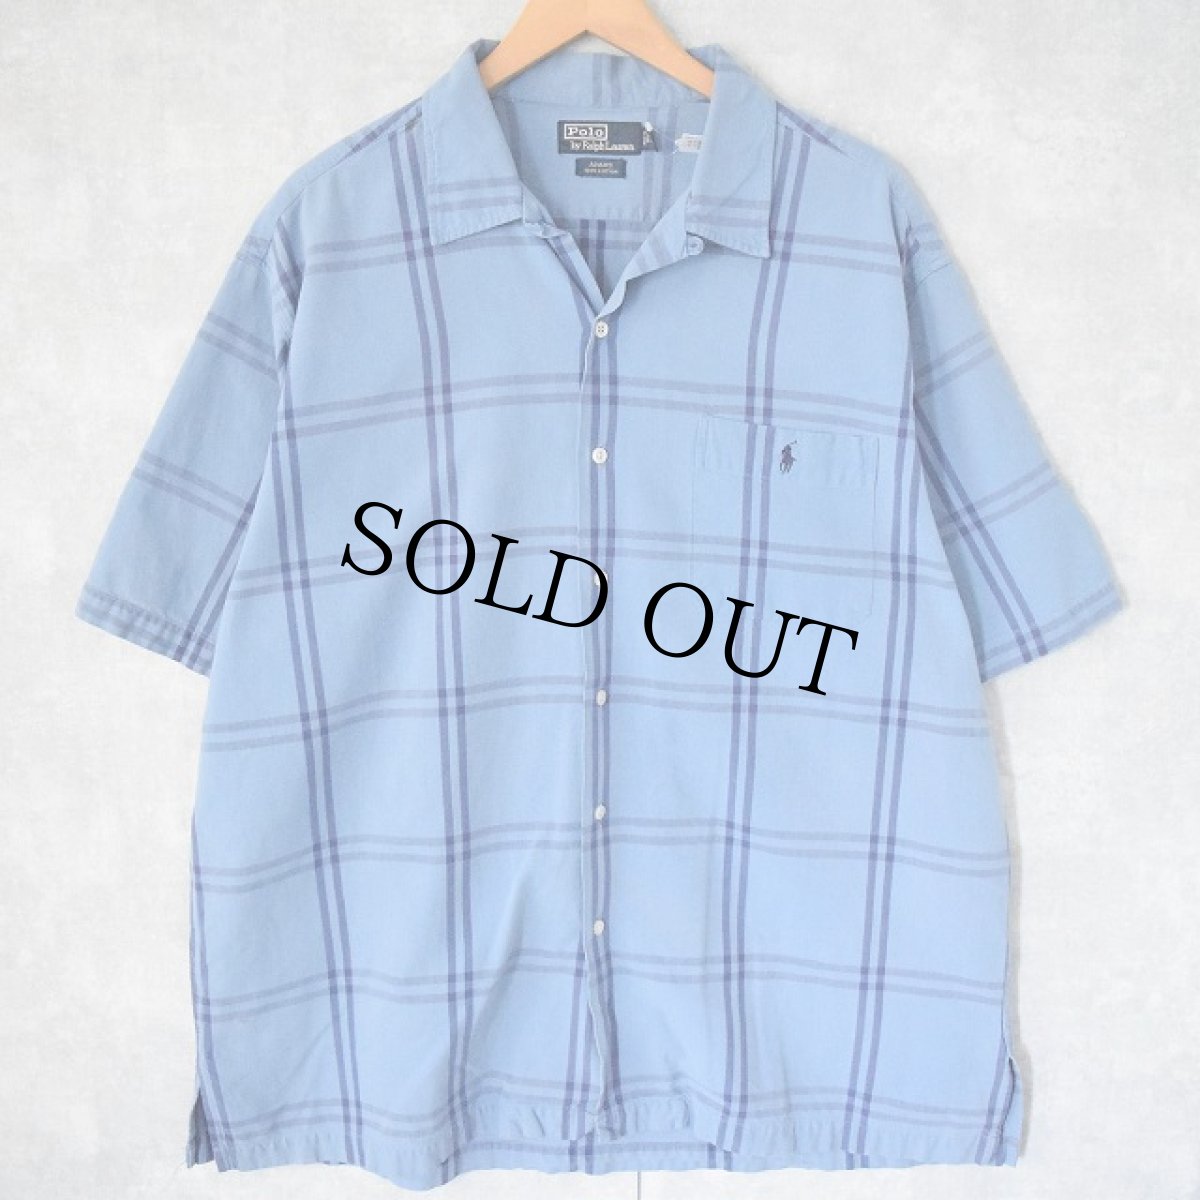 画像1: POLO Ralph Lauren "ADAMS" チェック柄 コットンオープンカラーシャツ XL (1)